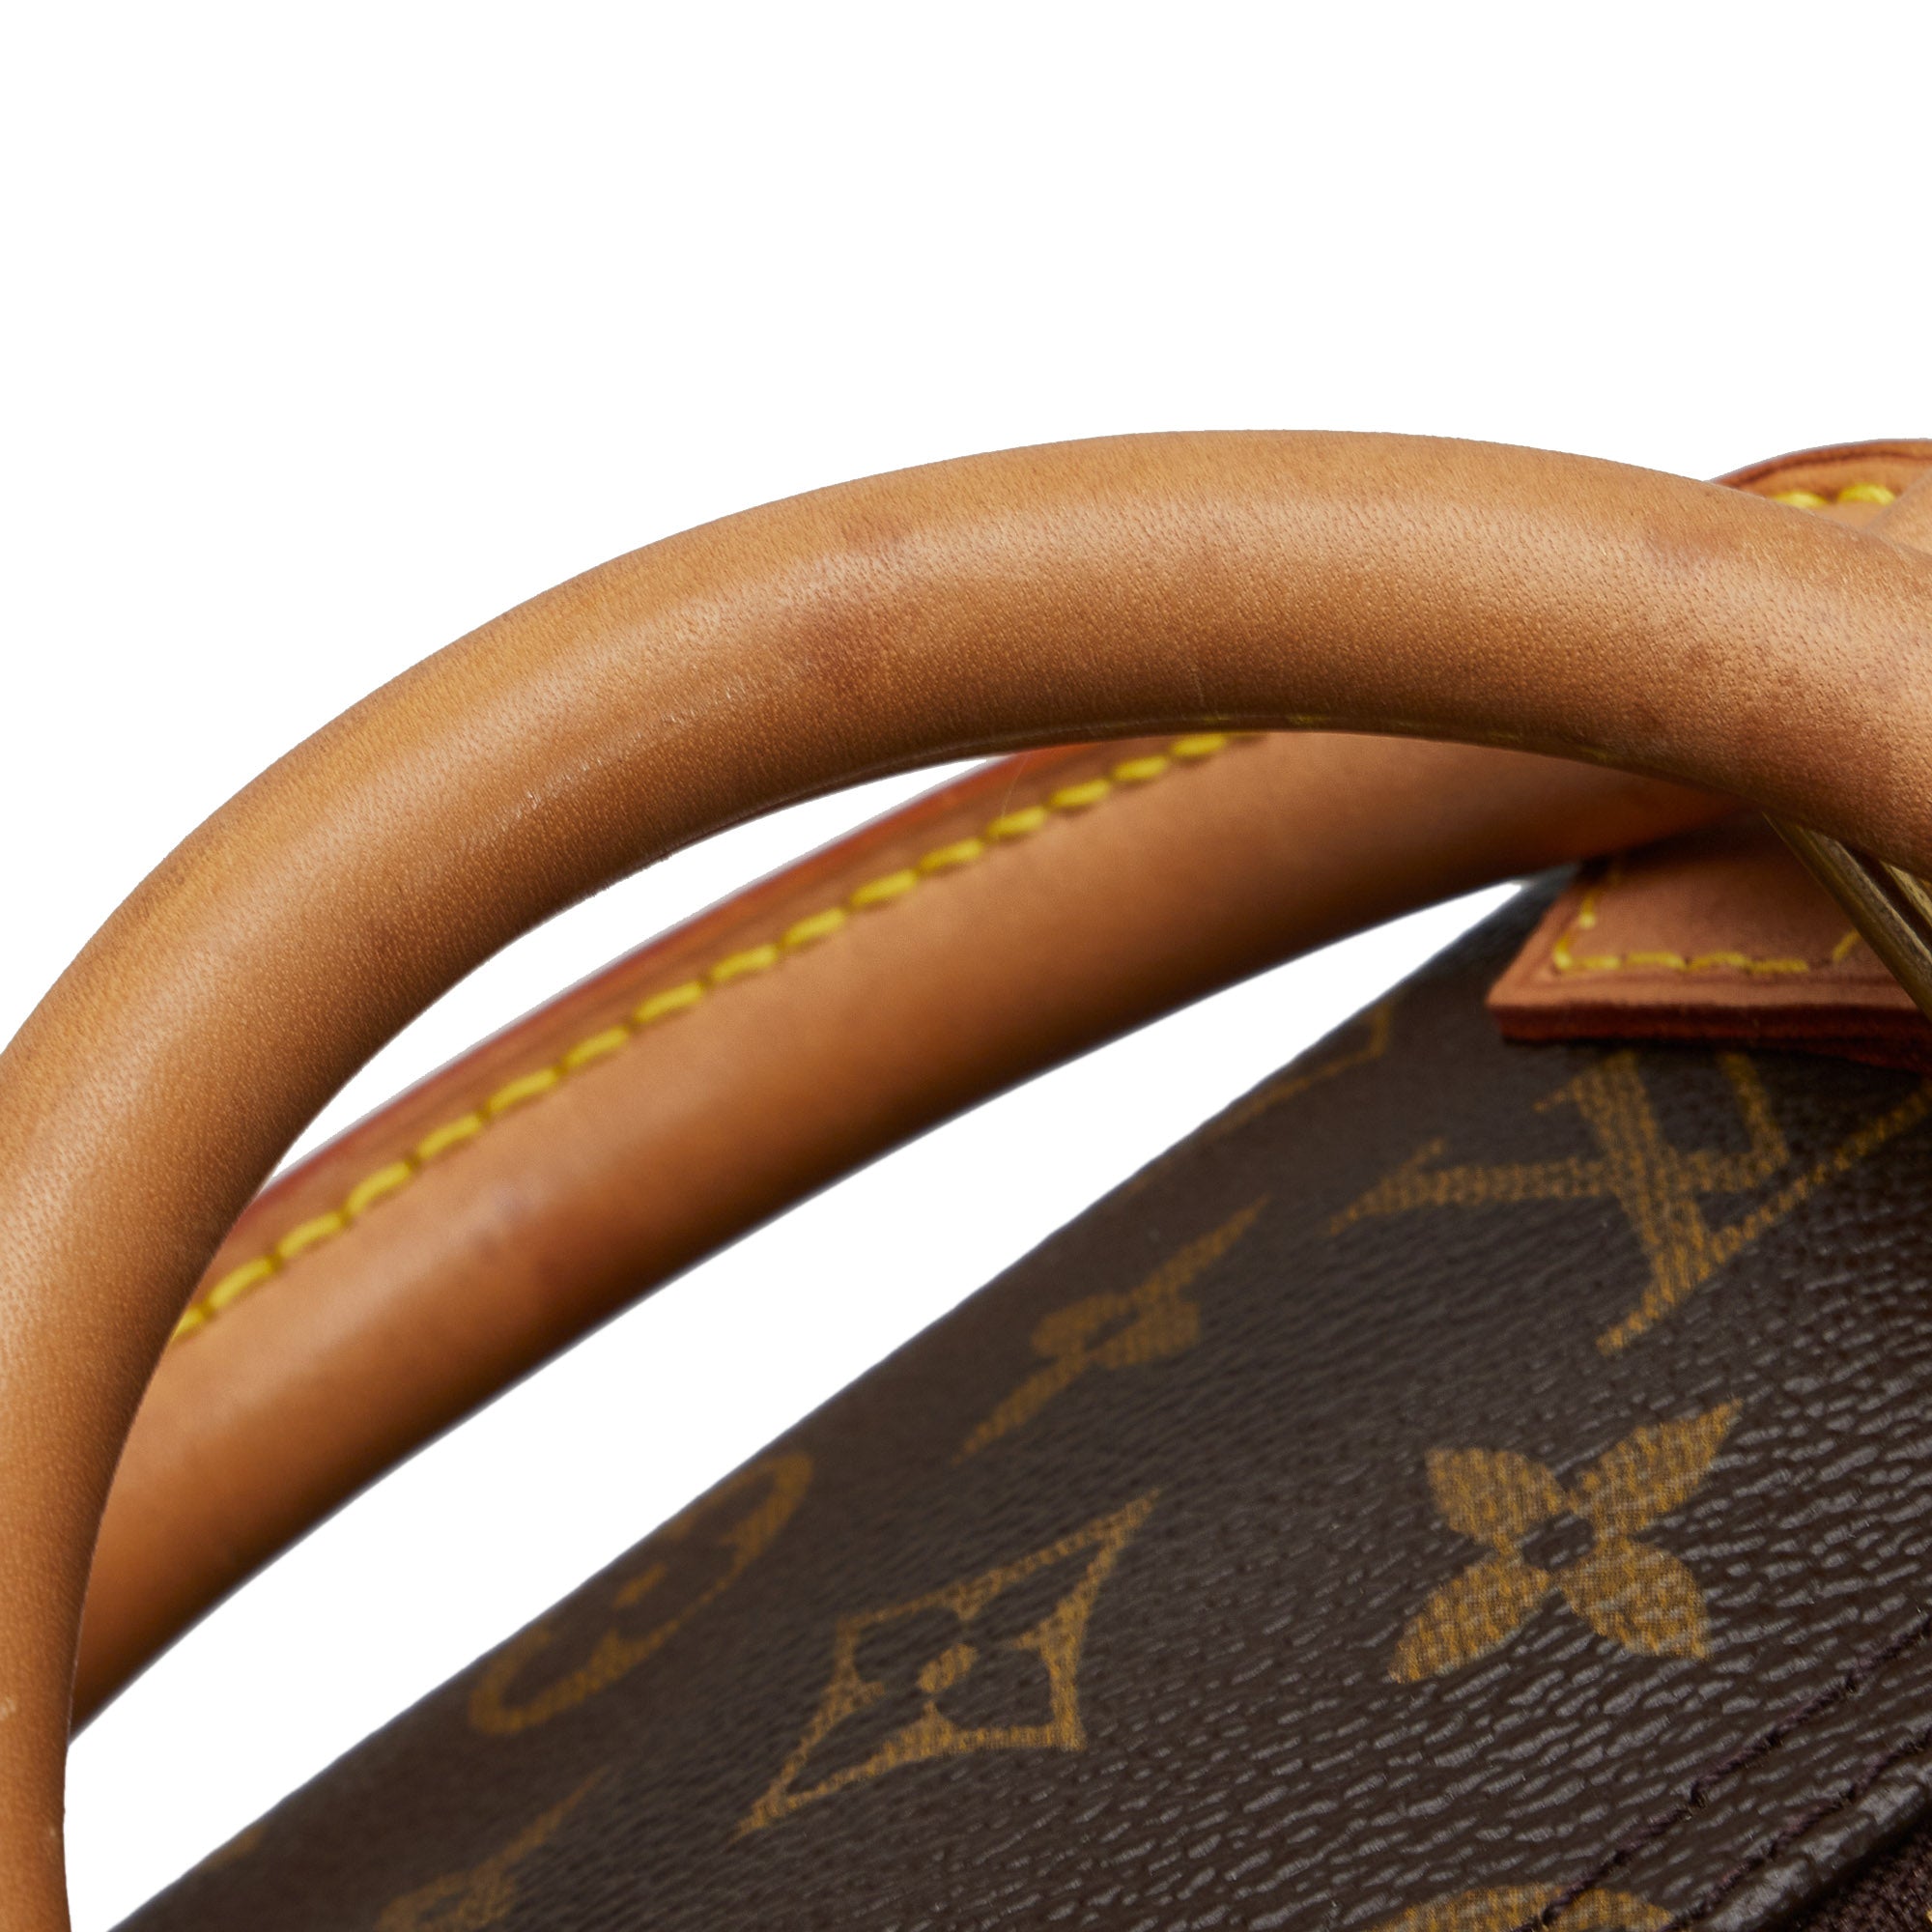 Louis Vuitton Handbag Speedy 35 Brown Monogram M41526 Boston Vl882